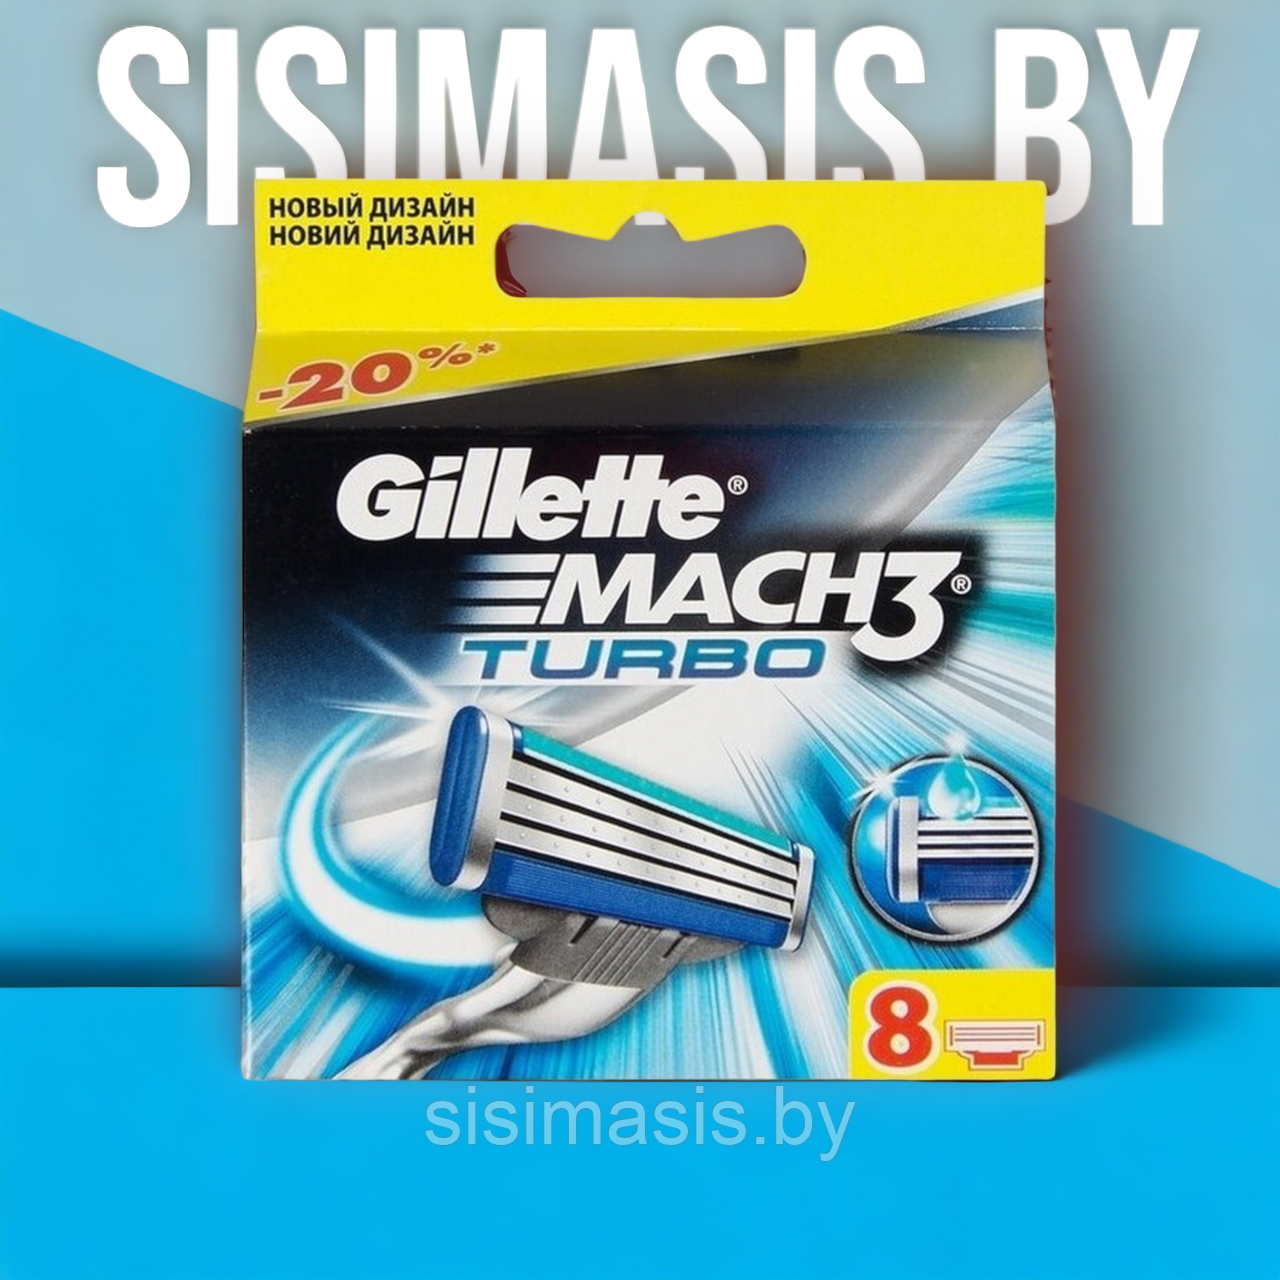 Сменные кассеты для бритья, Gillette Mach3 Turbo, оригинал, 8шт., фото 1